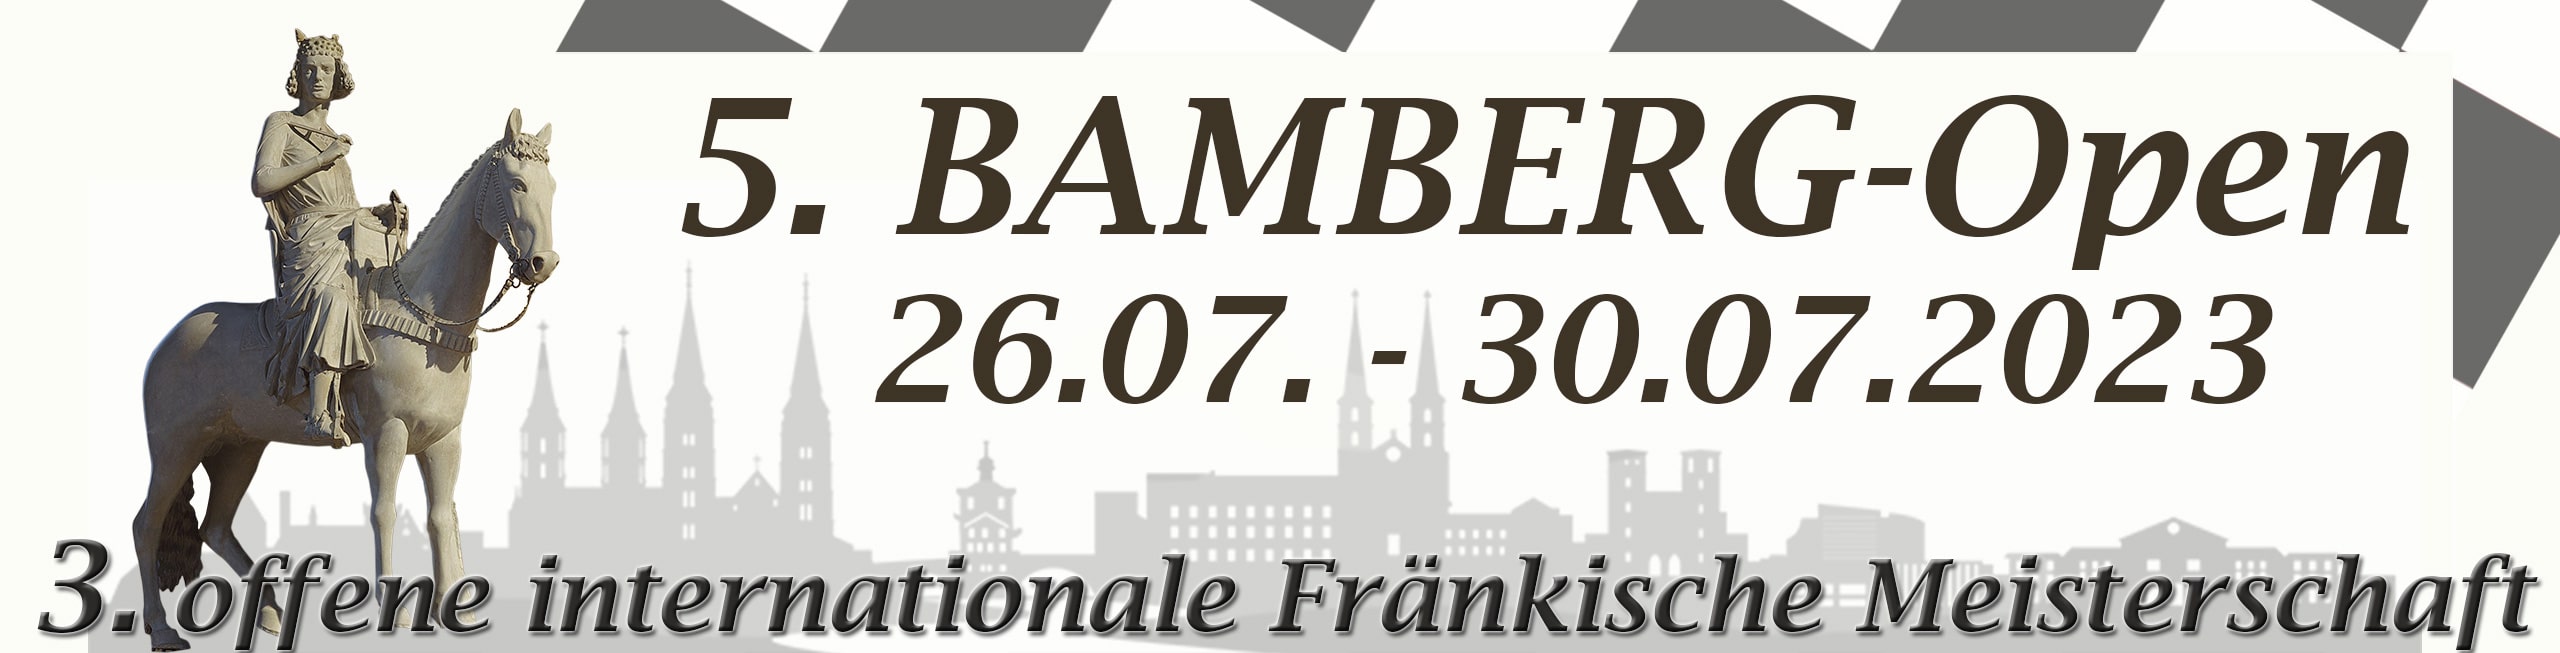 5. Bamberg-Open 2023